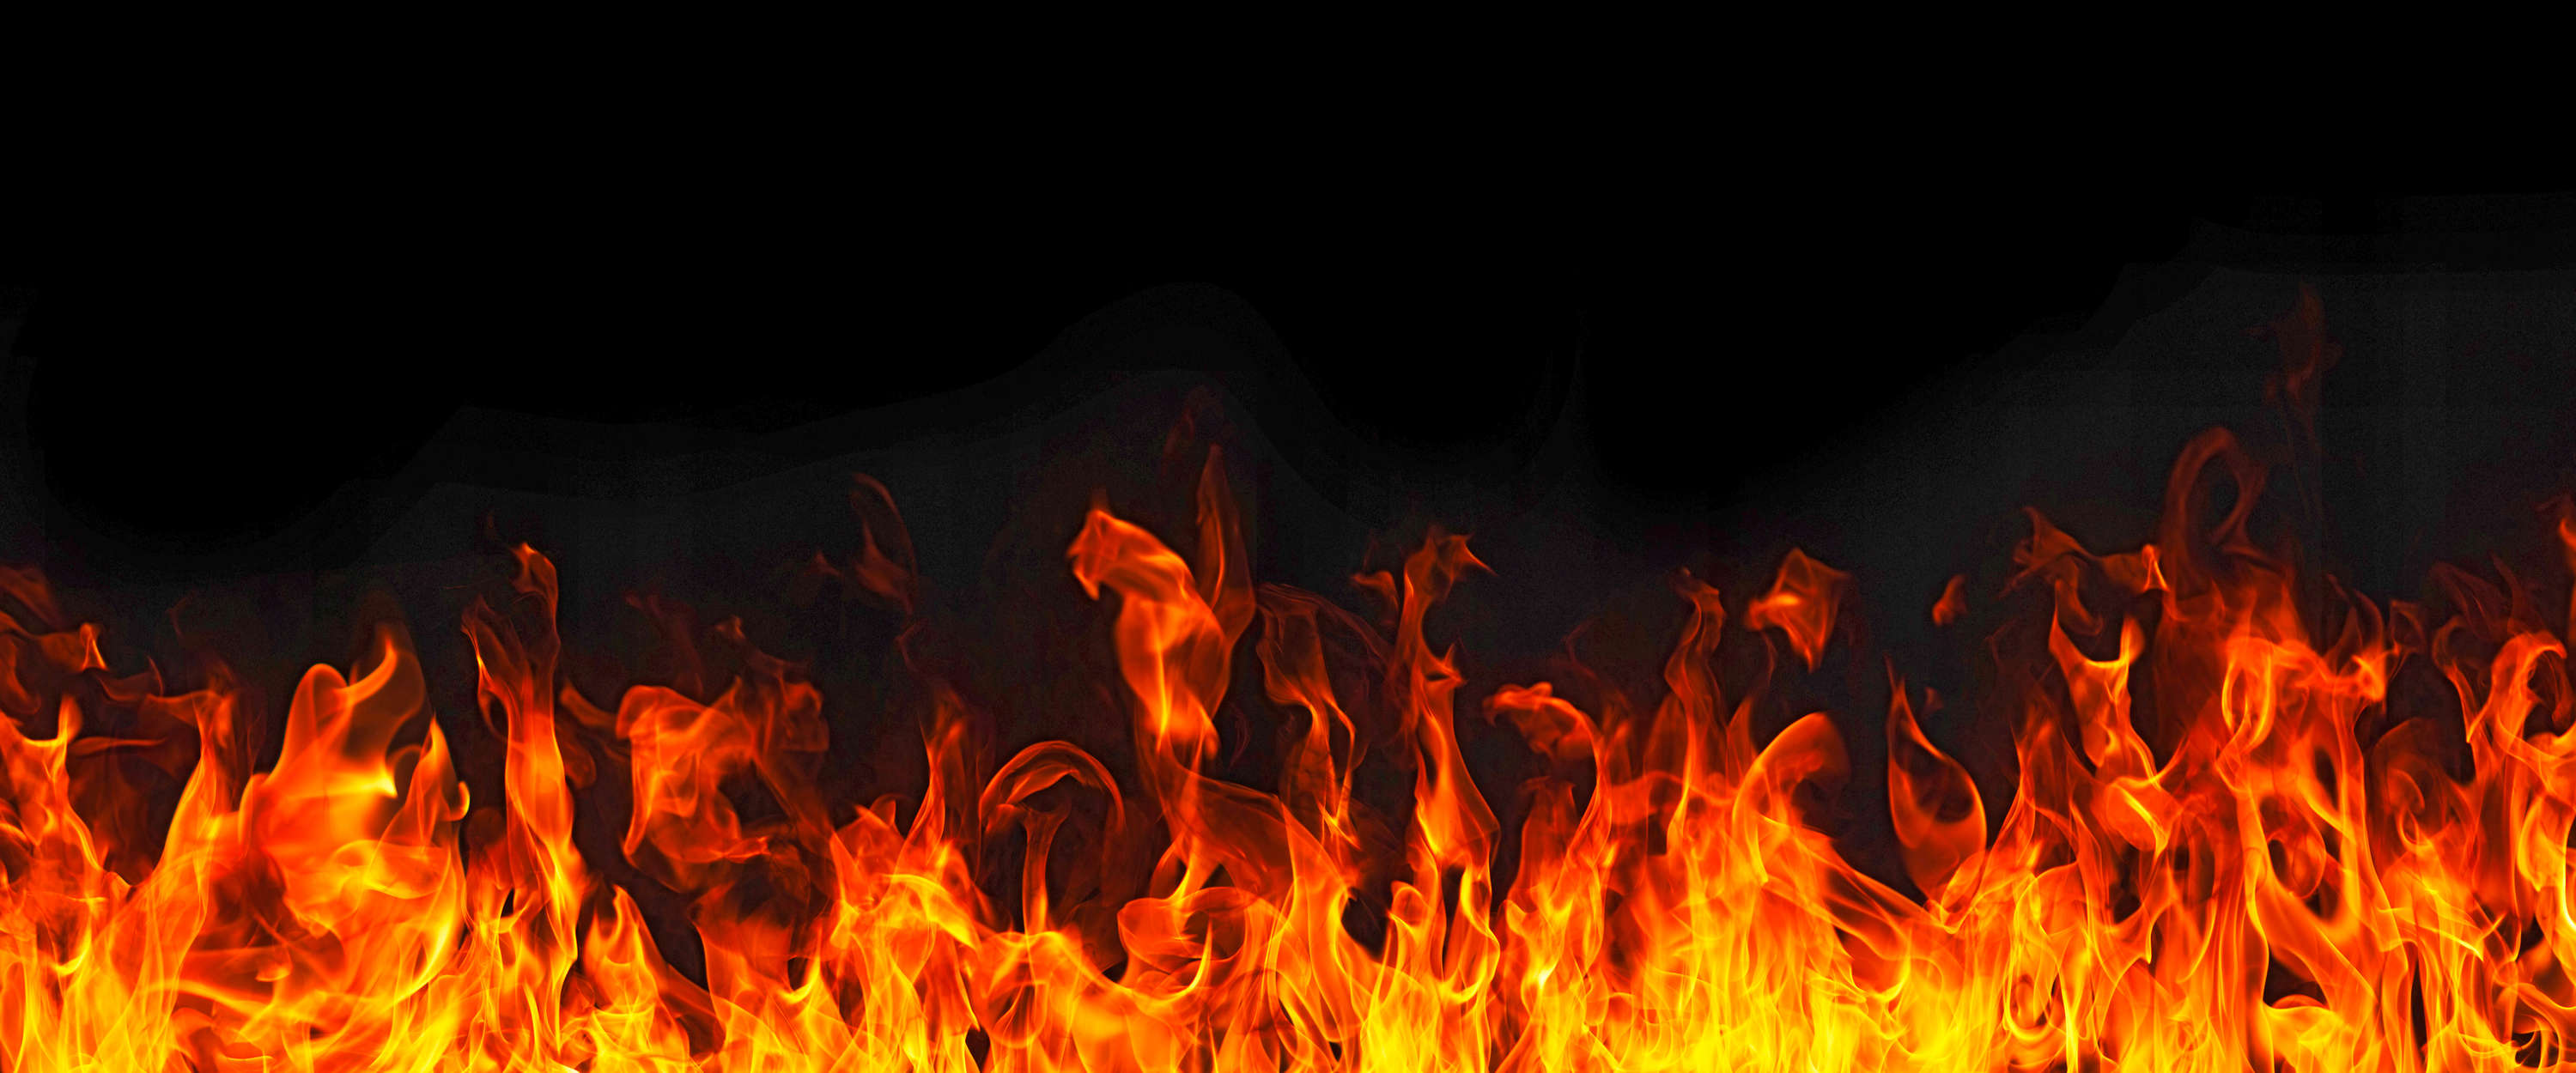             Zwart Fotobehang Vuur met Vlammen Motief
        